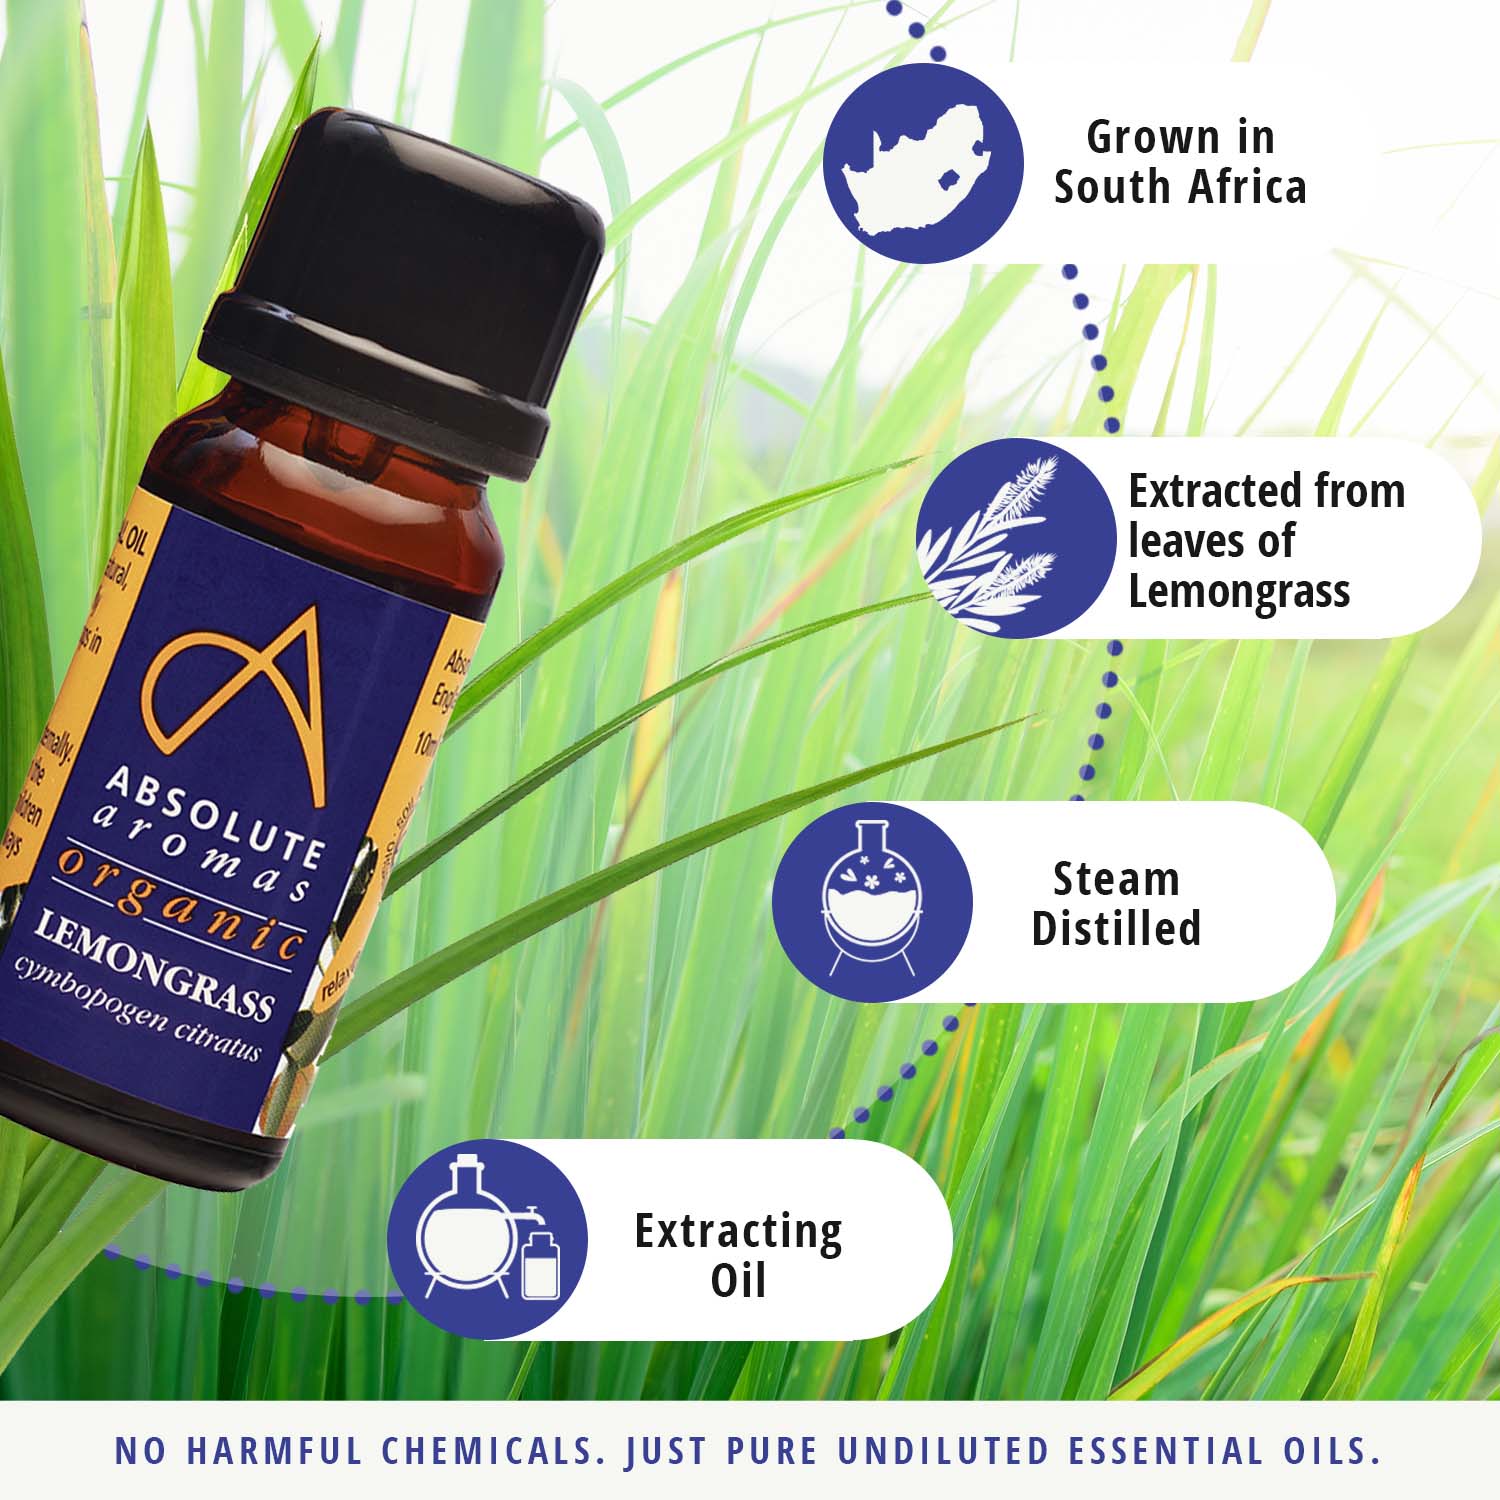 Organic lemongrass oil uses